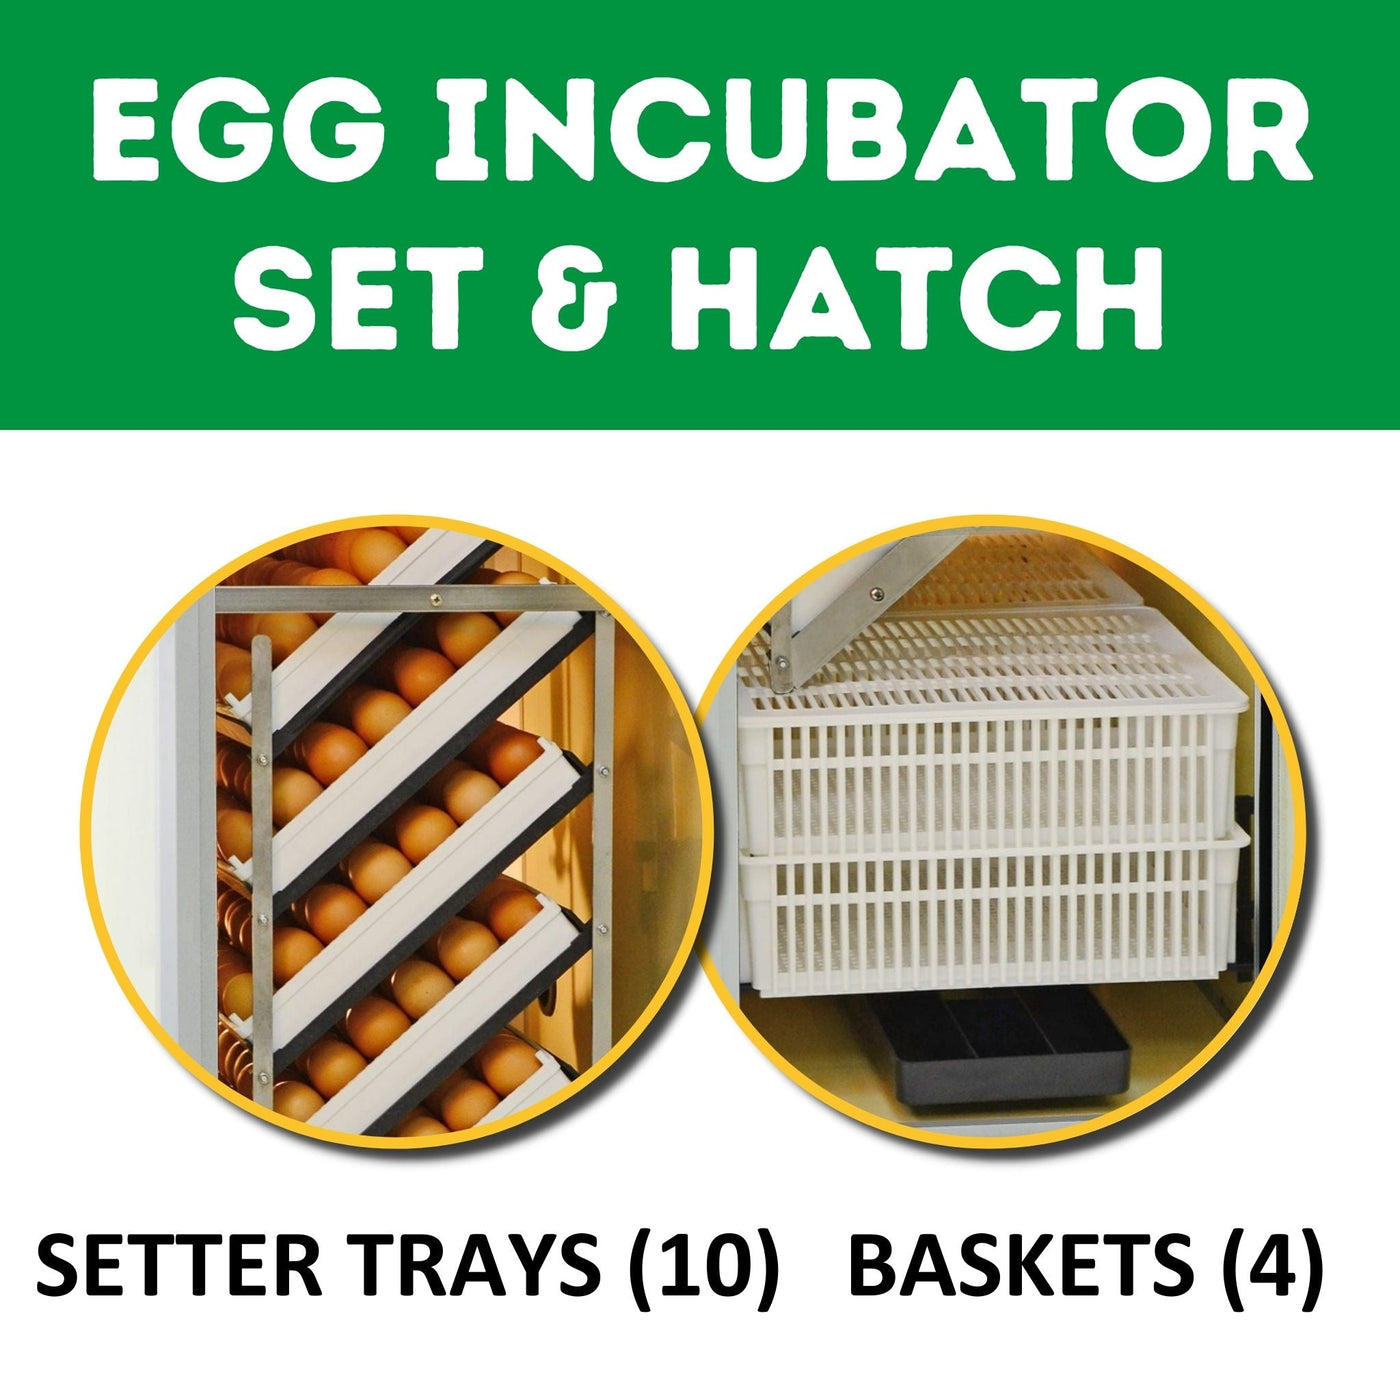 HB350 C - Egg Incubator - Setter & Hatcher